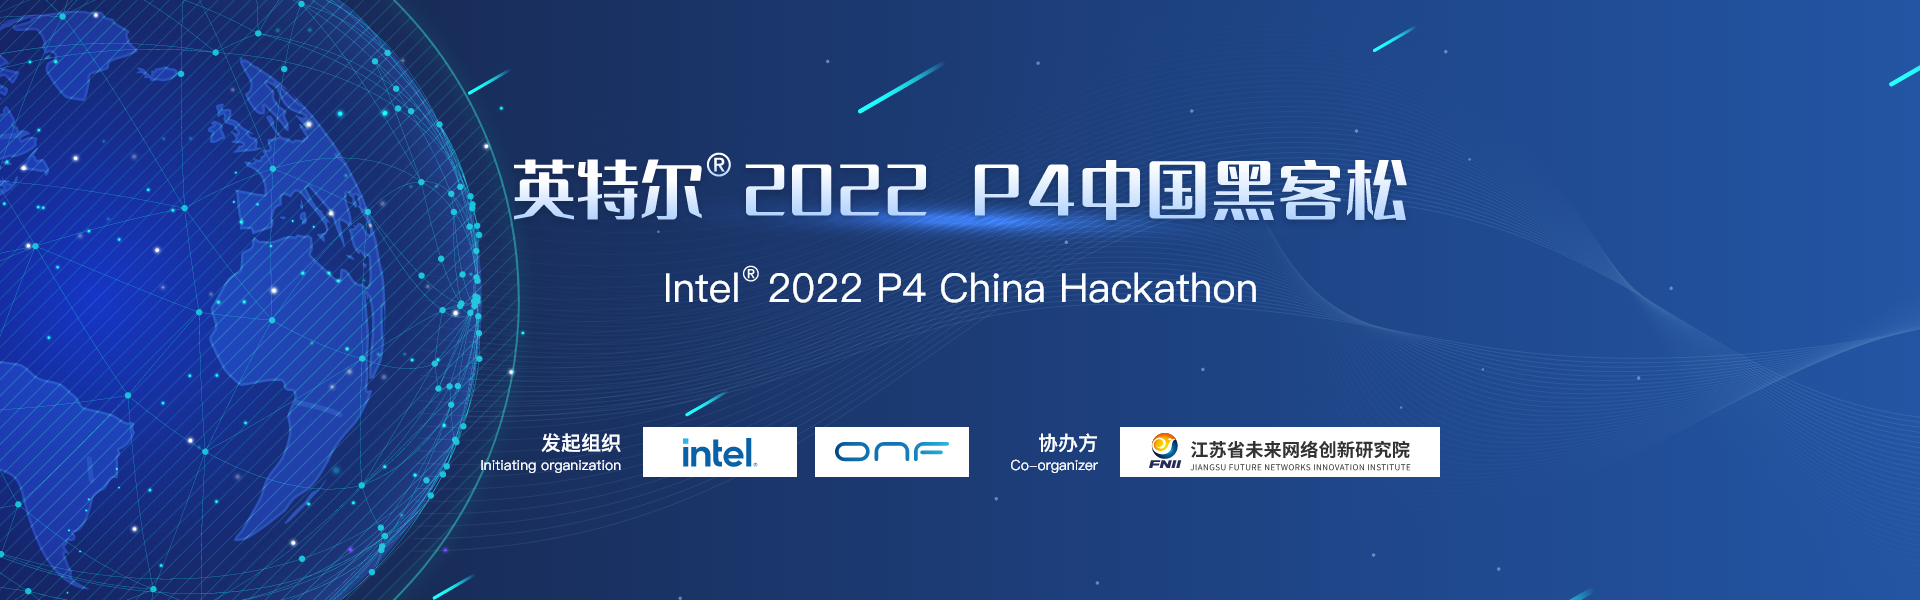 英特尔® 2022 P4中国黑客松竞赛